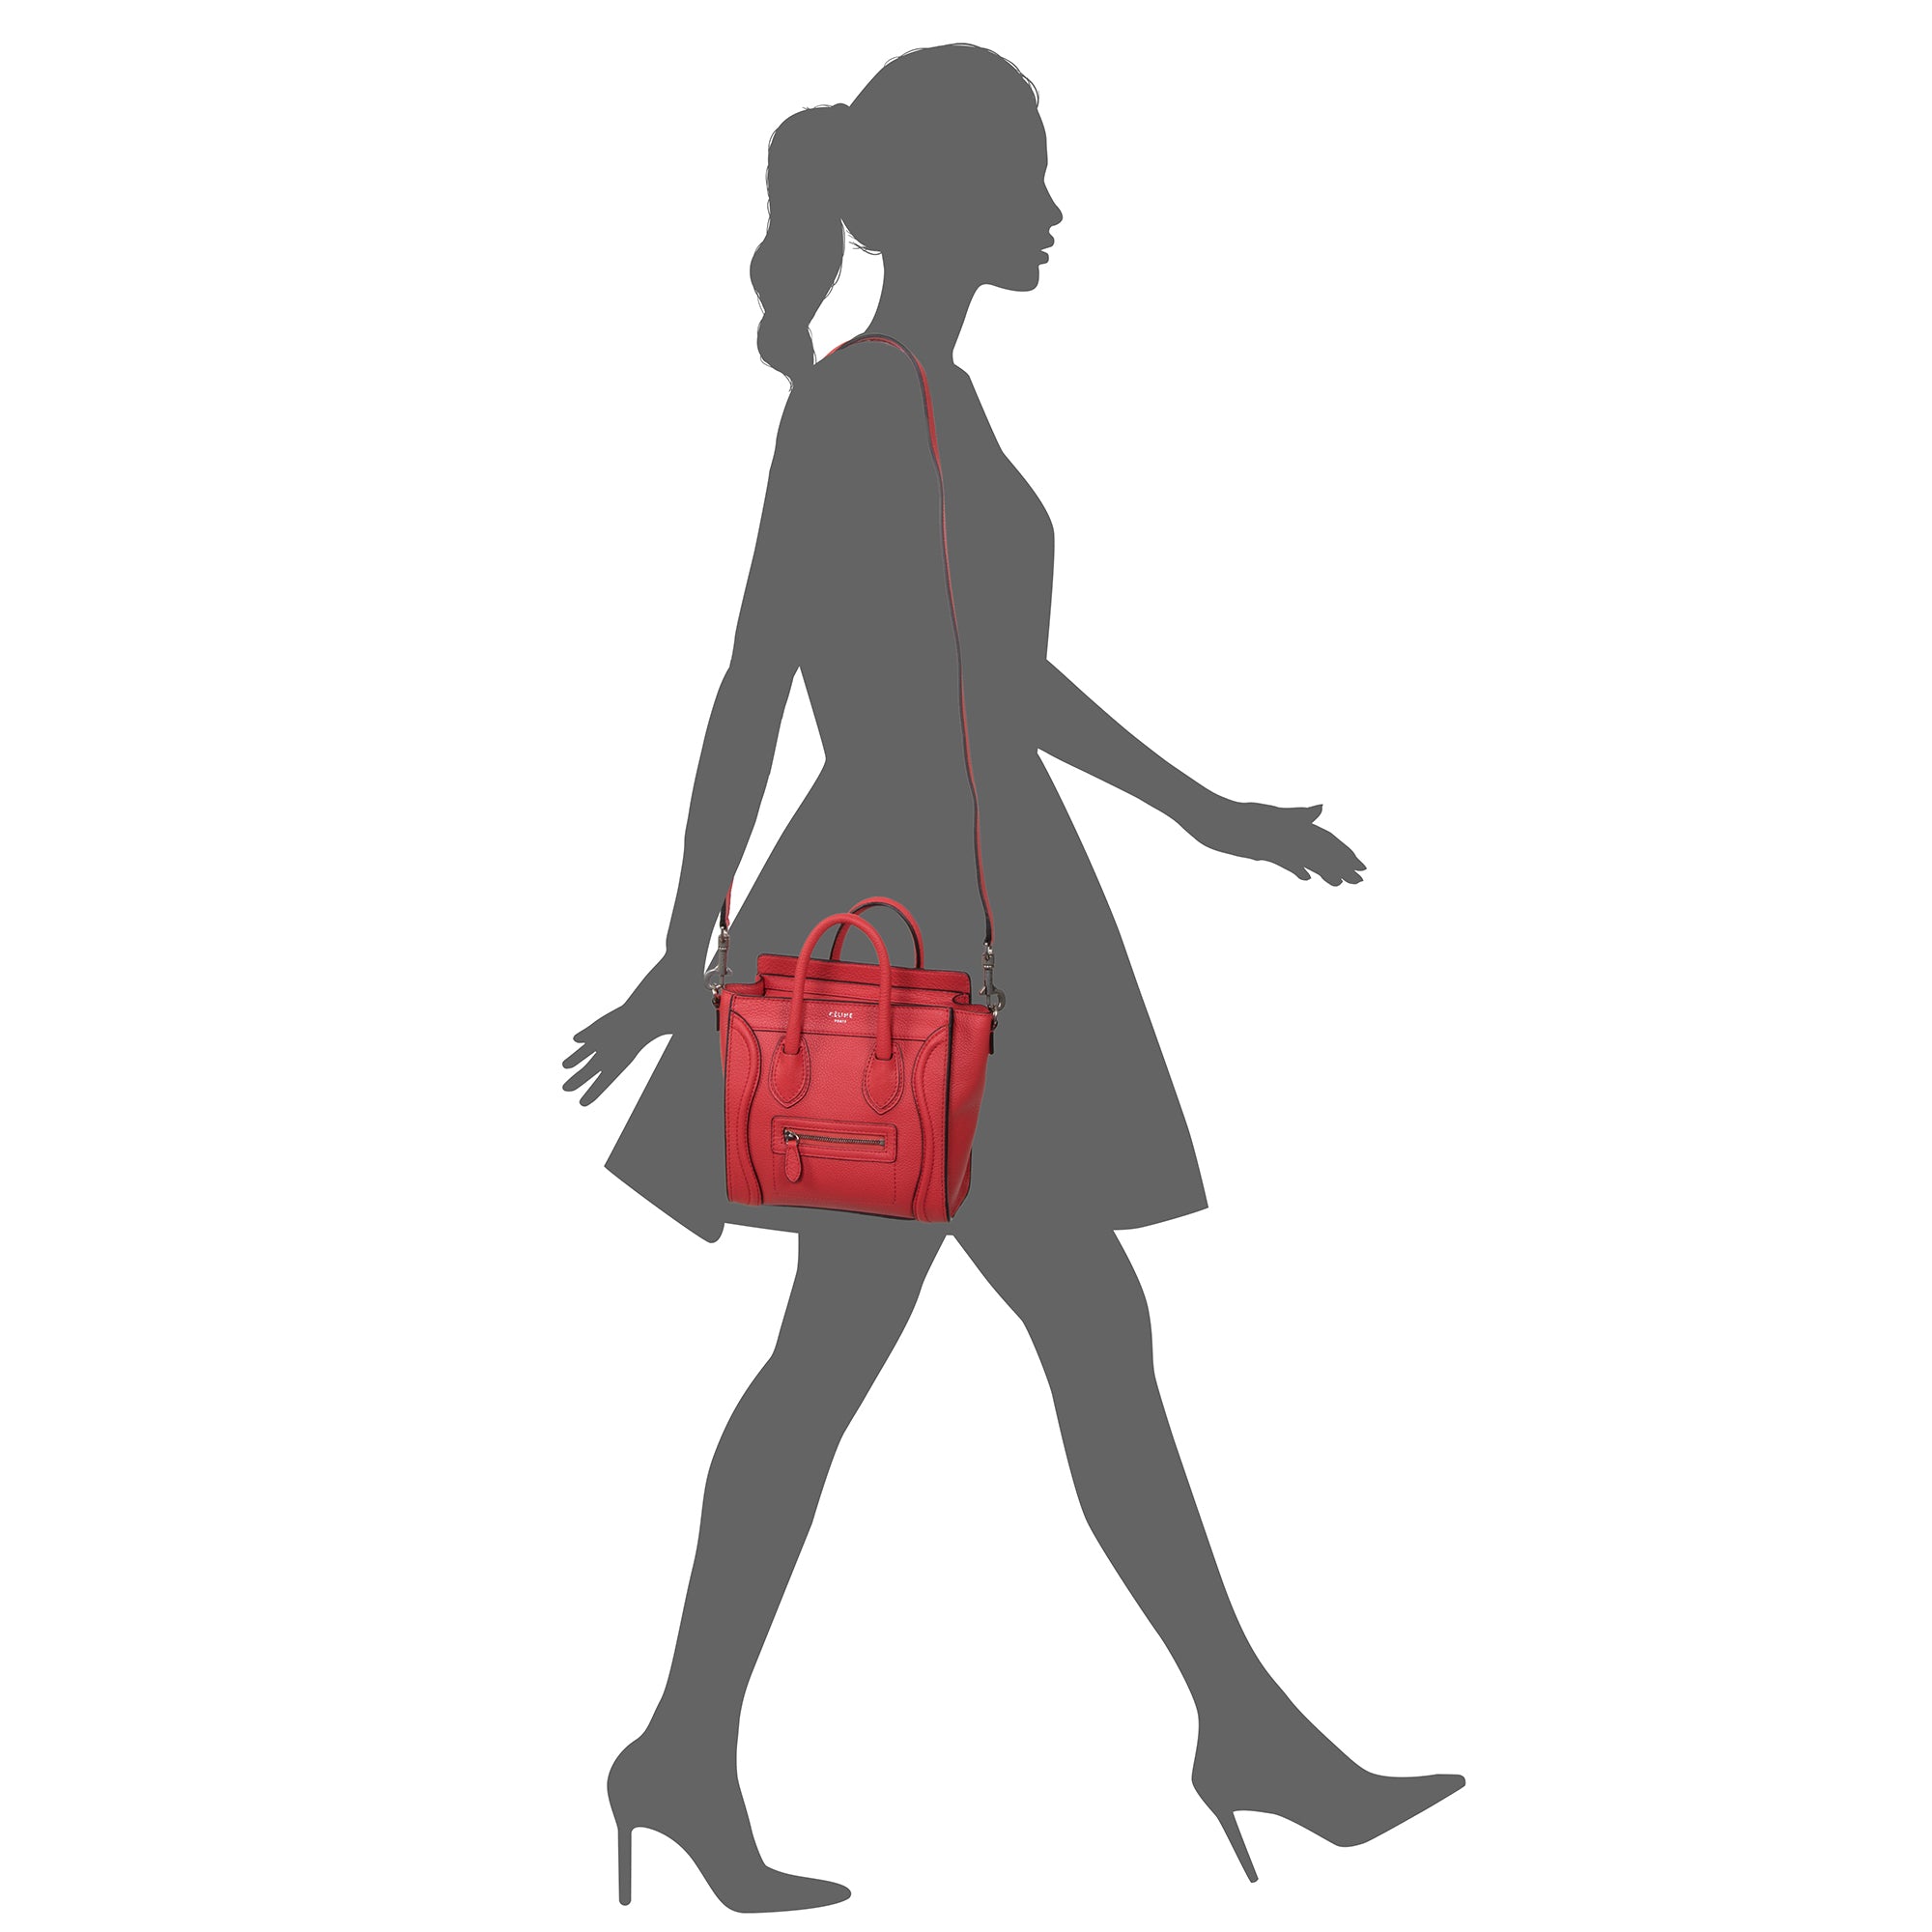 Celine Nano Luggage Leather Shoulder Bag Red For Women